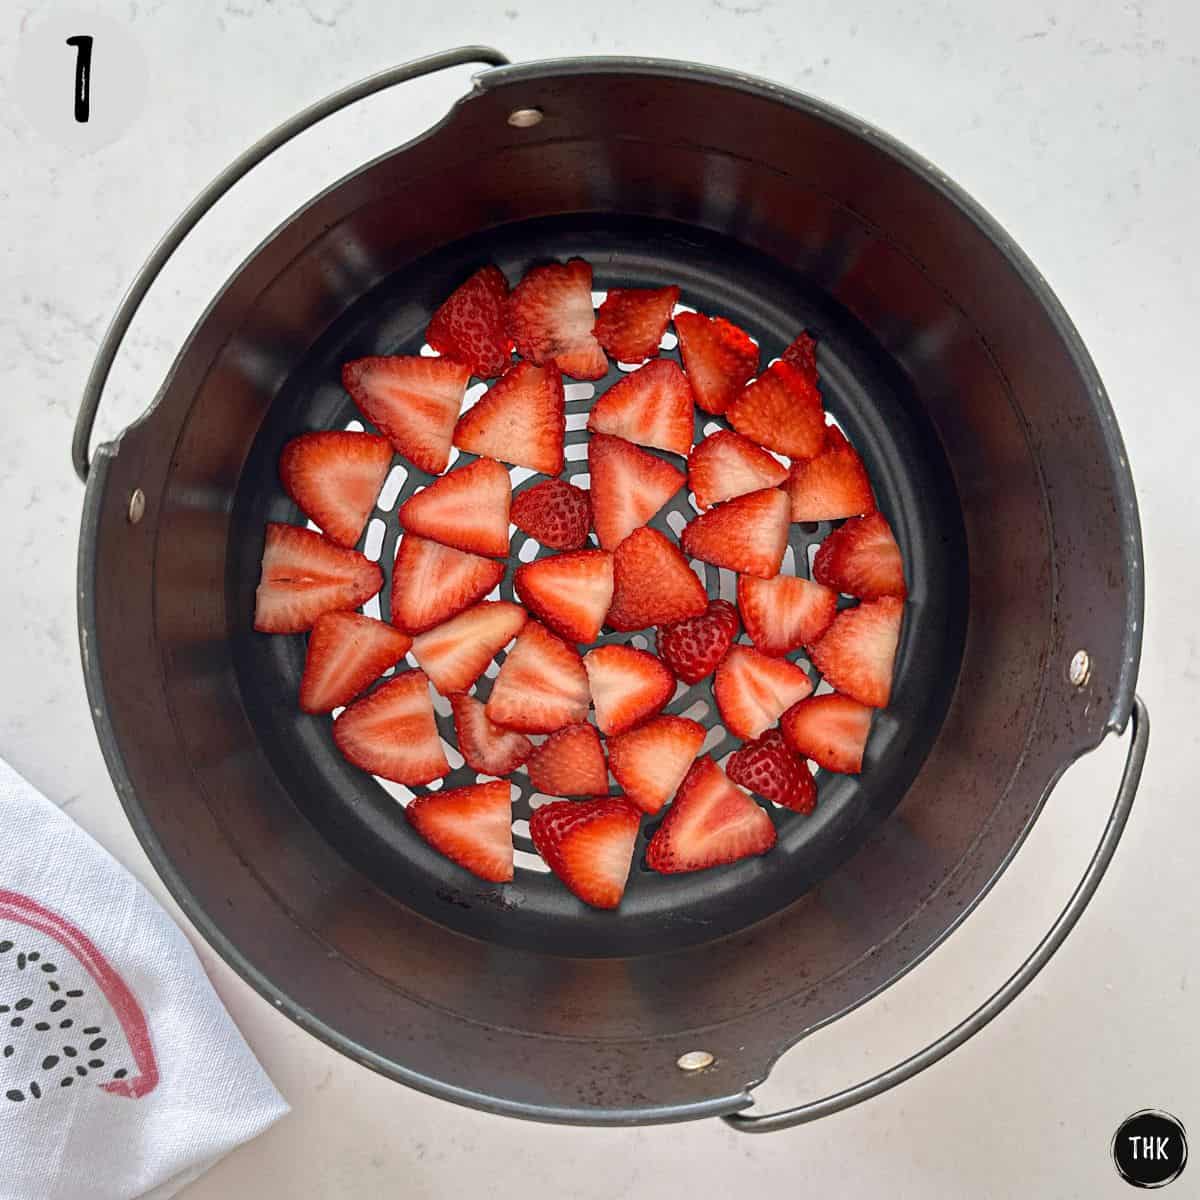 Slice strawberries inside air fryer basket.